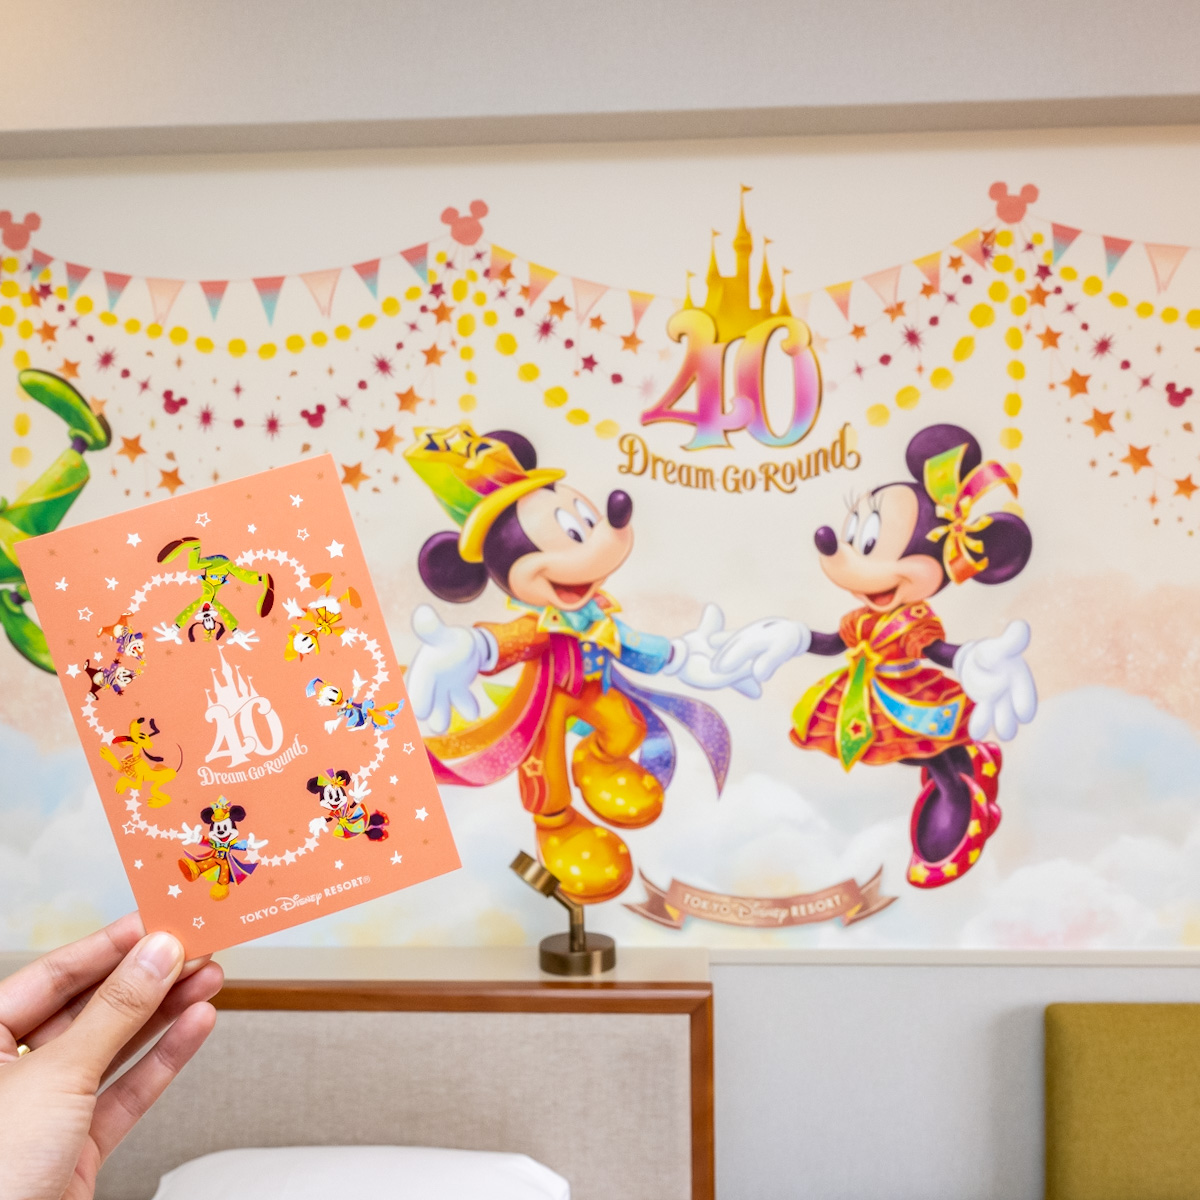 ディズニーホテル“東京ディズニーリゾート40周年“ドリームゴーラウンド”ポストカード